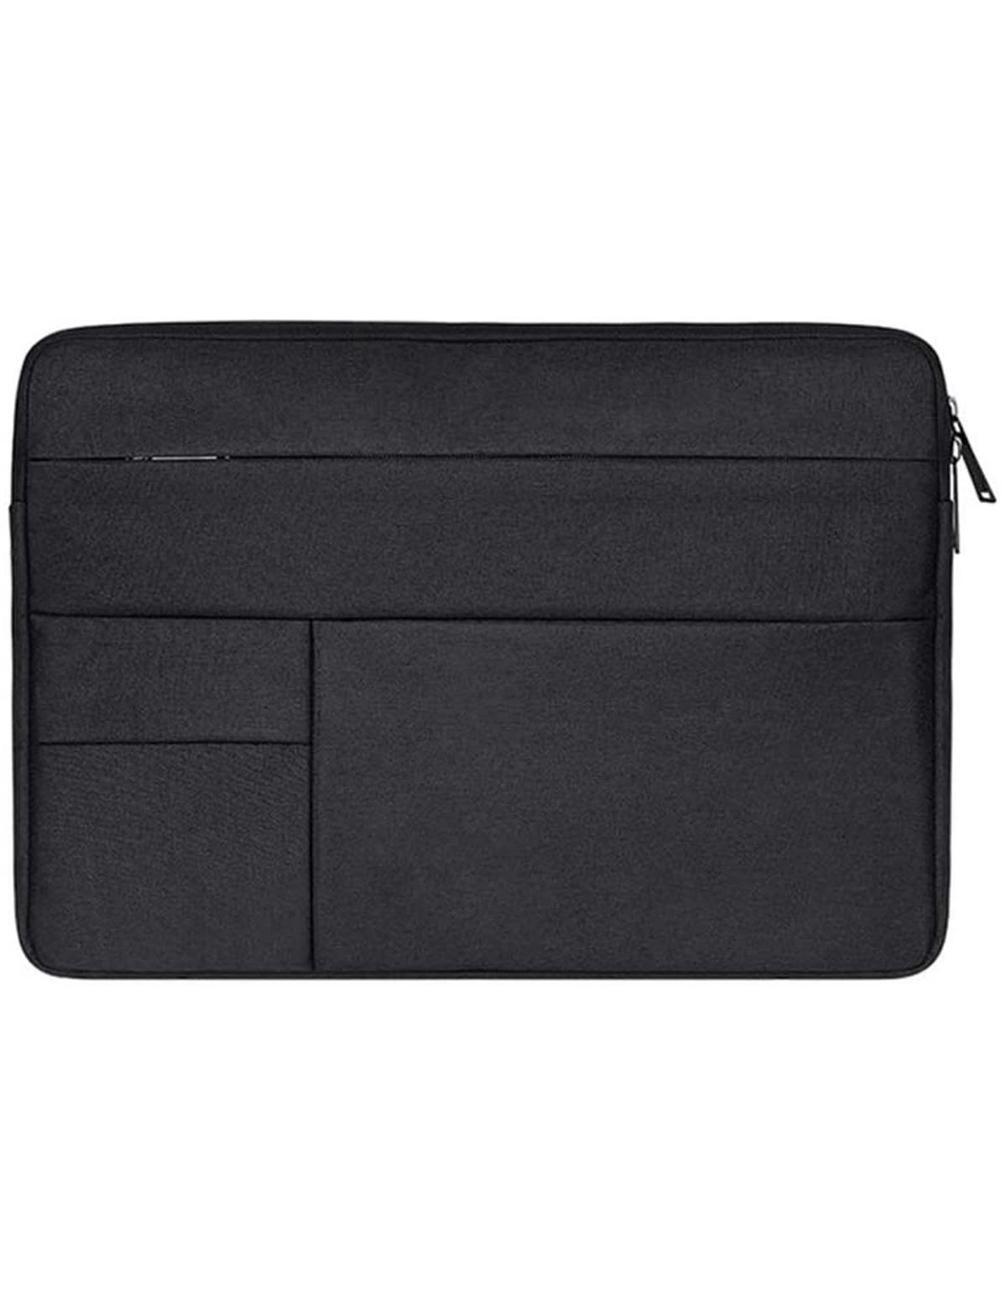 Laptop -veske Oxford stoff svart 13,3 " - Elkjøp